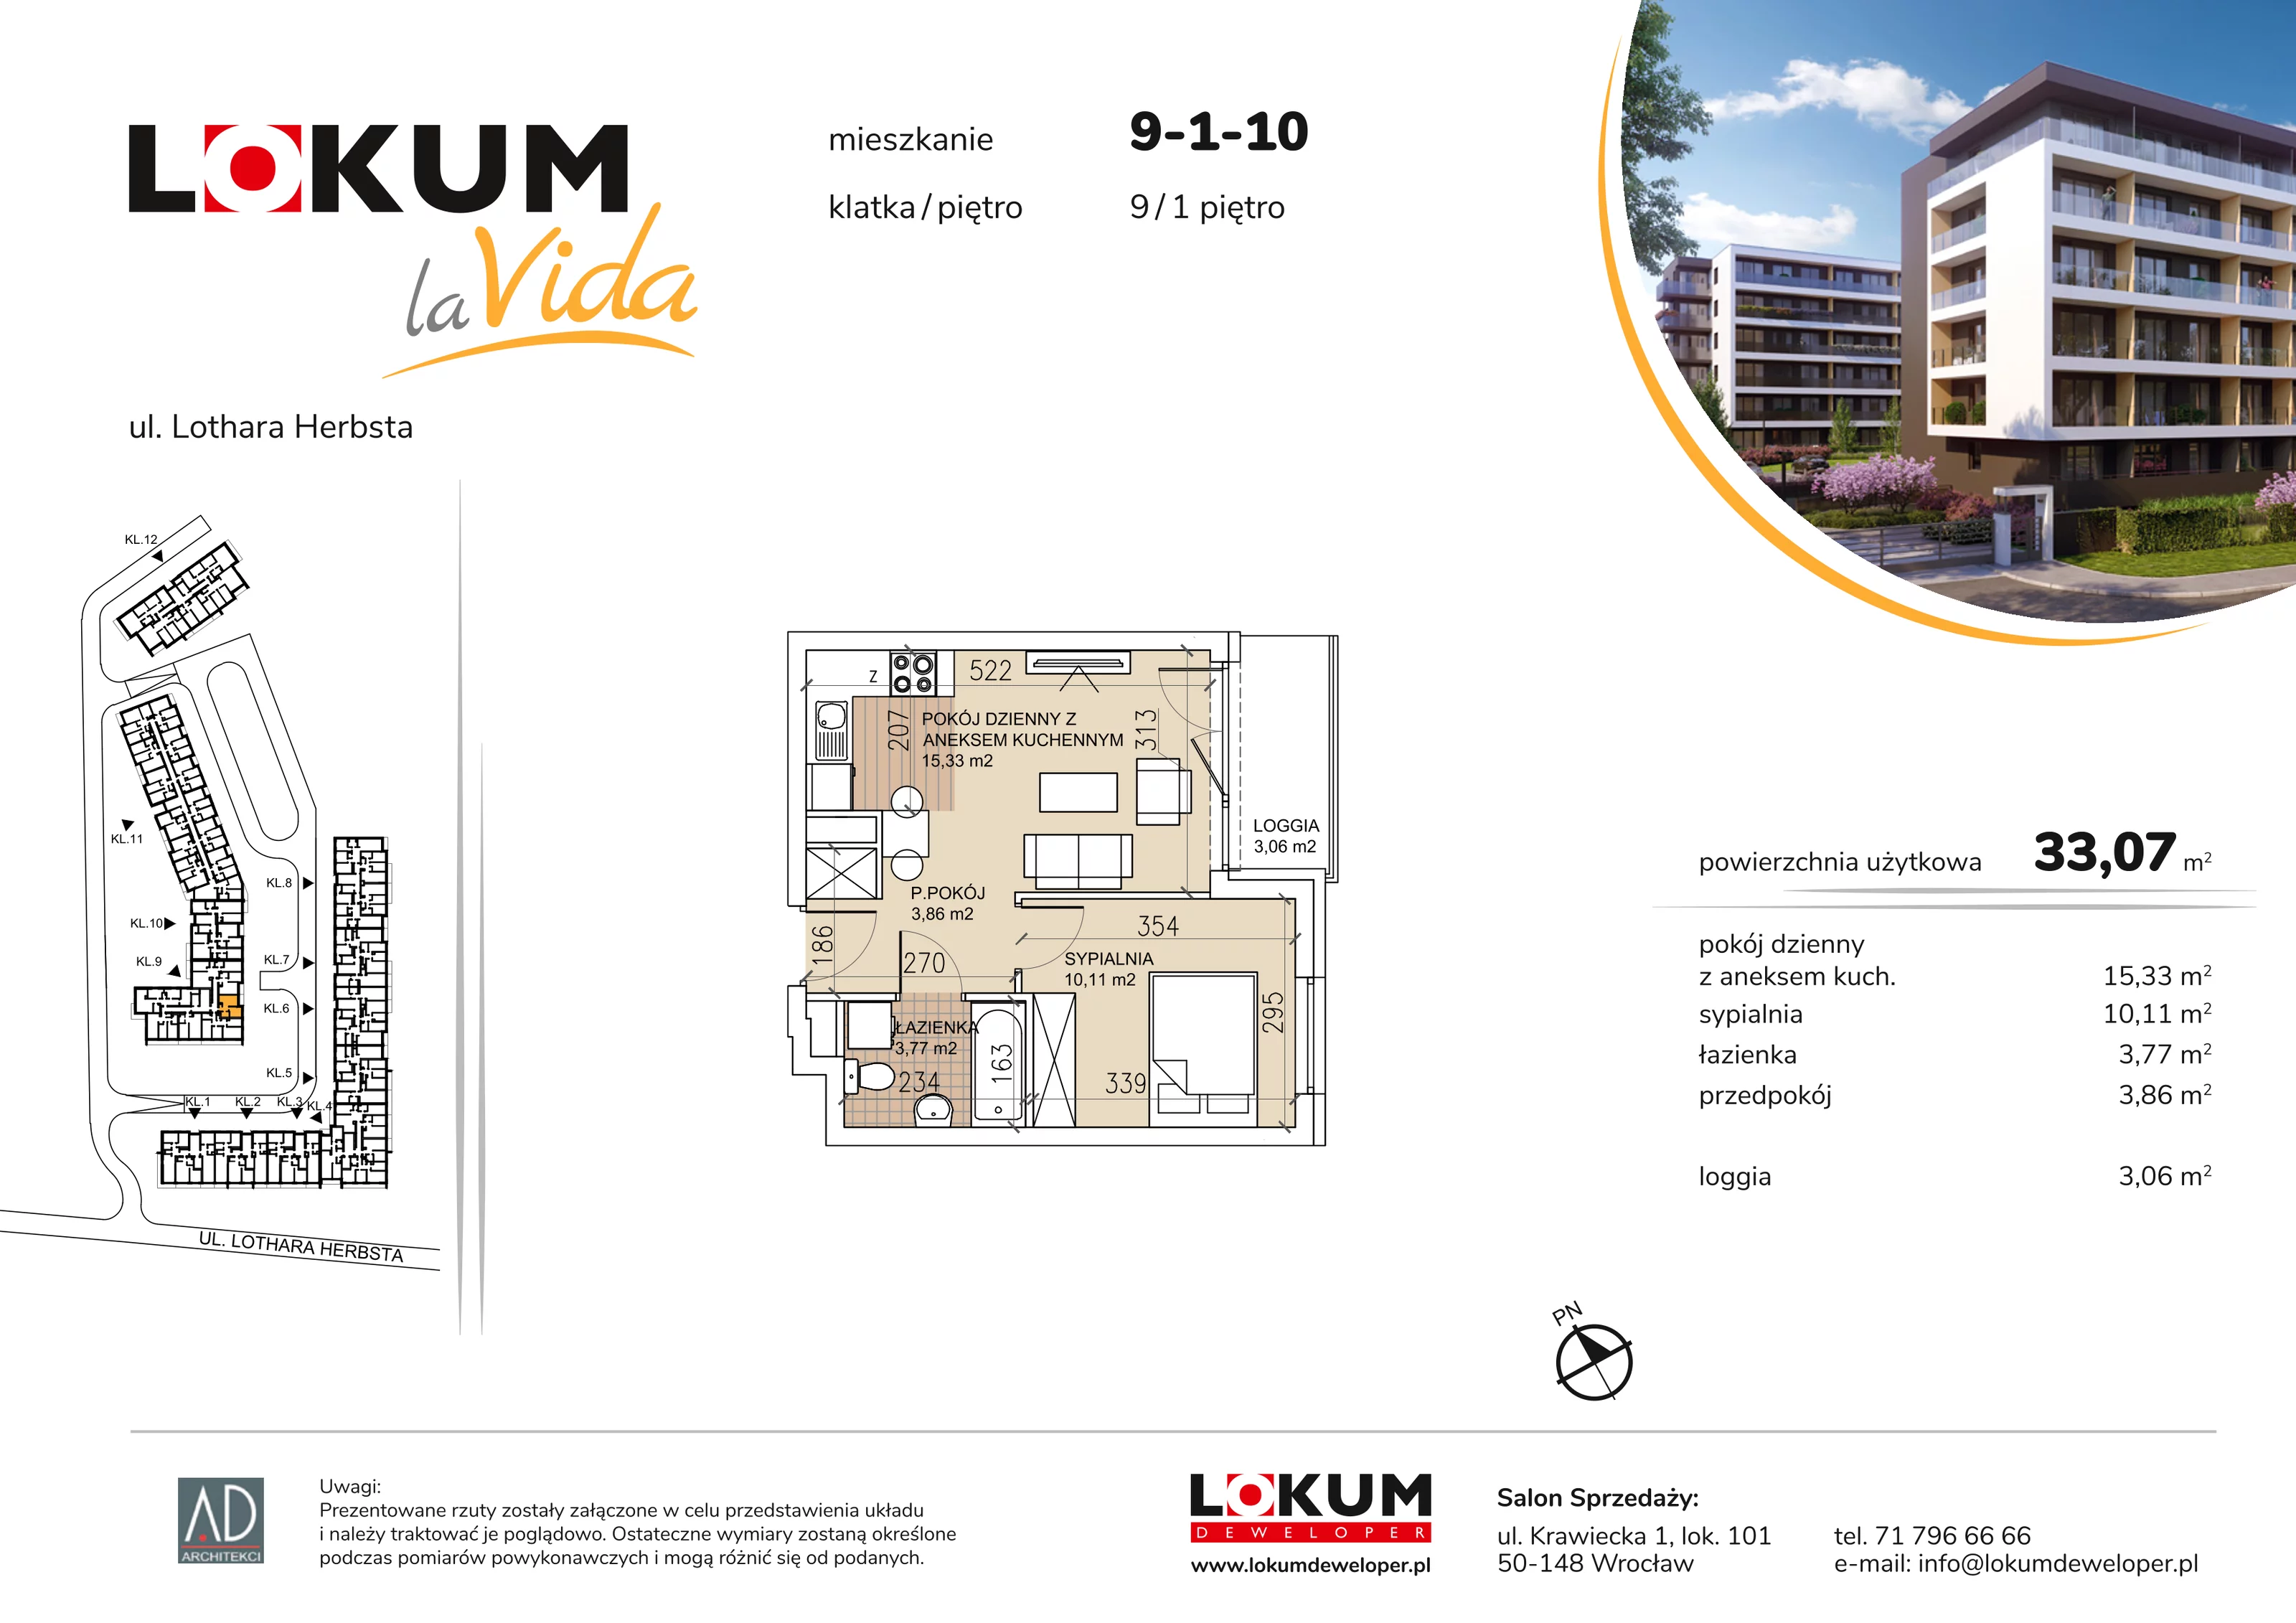 Mieszkanie 33,07 m², piętro 1, oferta nr 9-1-10, Lokum la Vida, Wrocław, Sołtysowice, ul. Lothara Herbsta